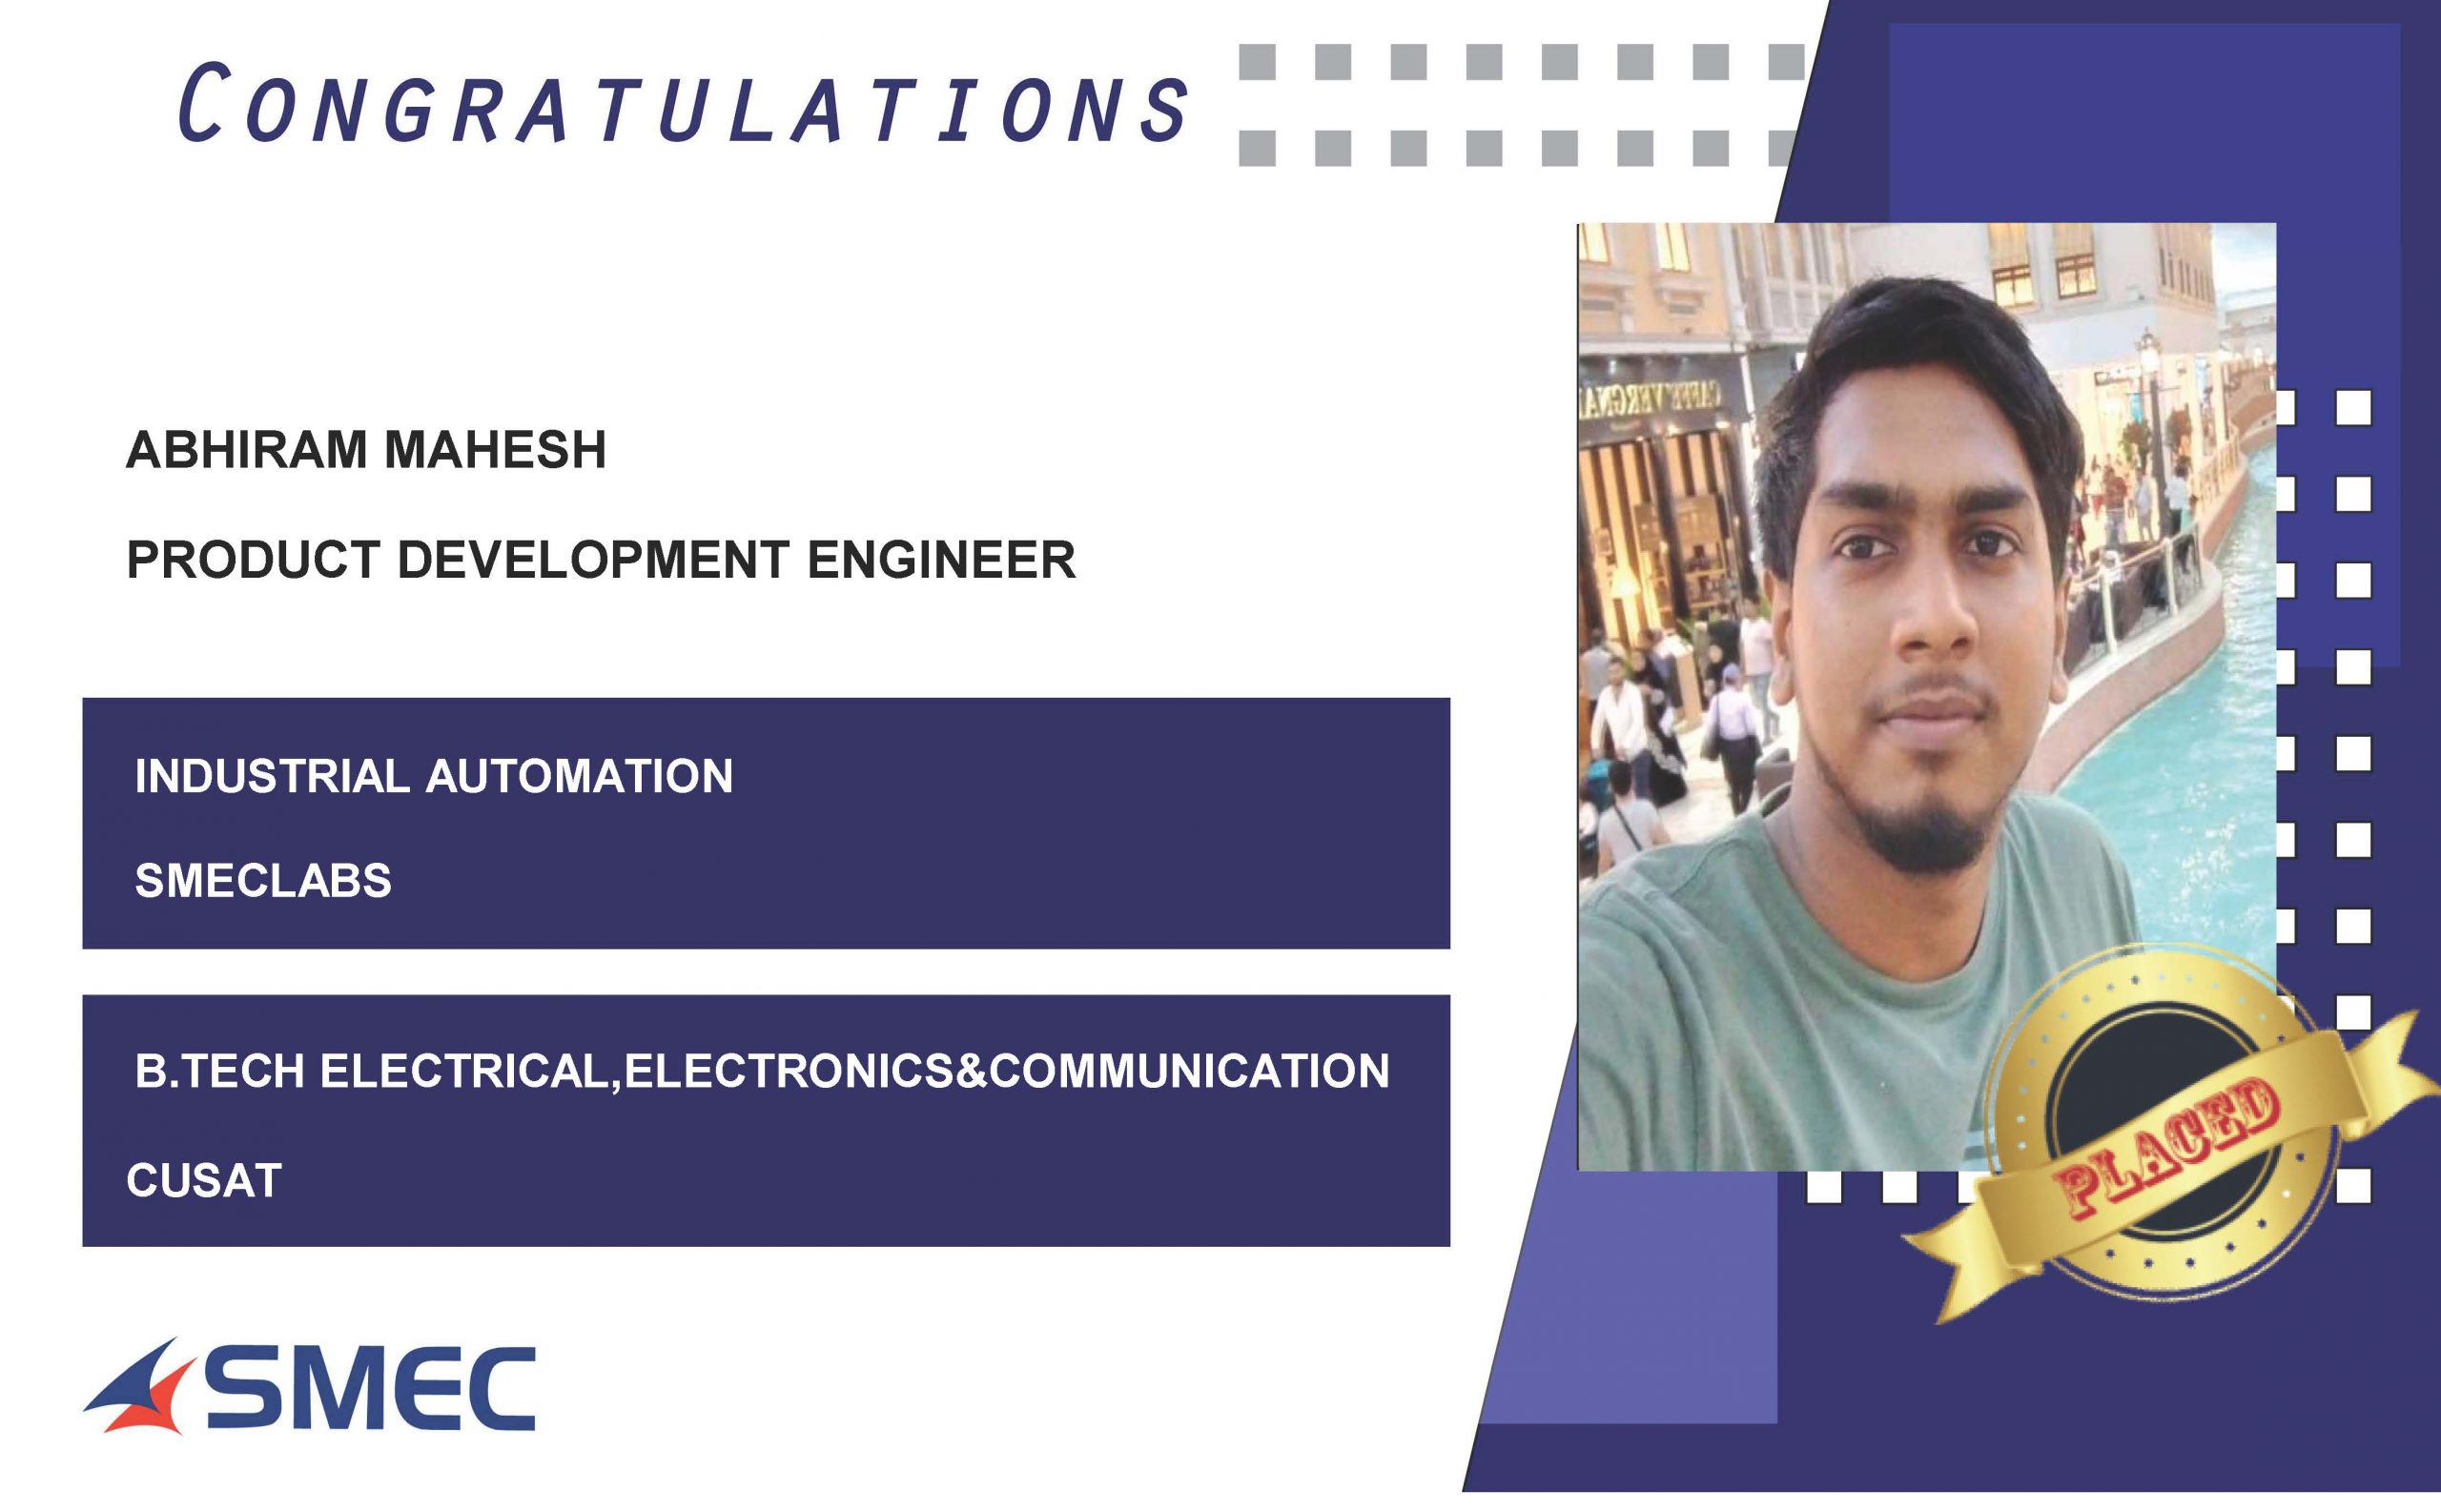 Abhiram mahesh placed at Product Development Engineer-